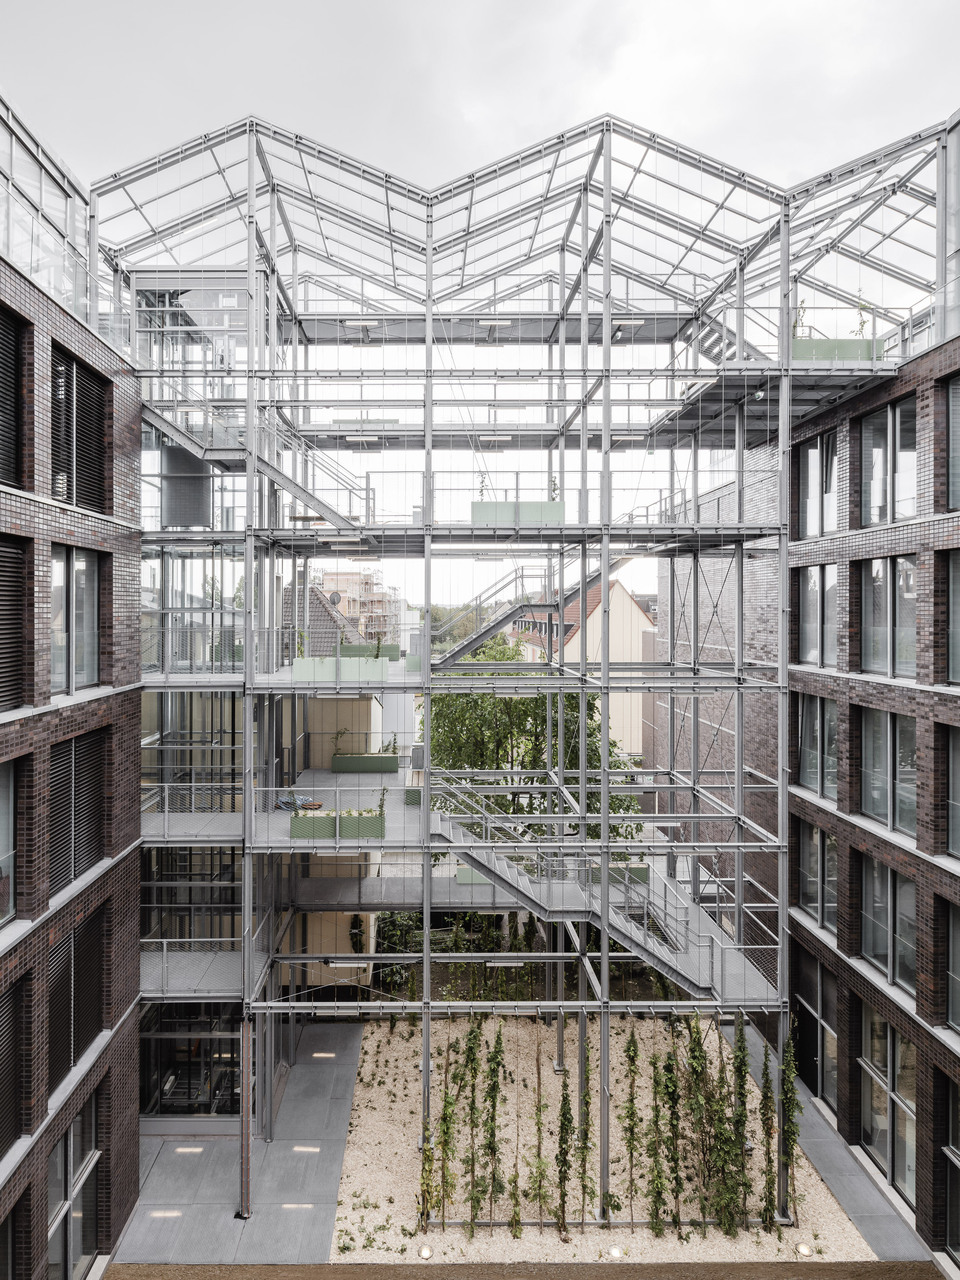 A belső udvar nézete a vertikális üvegházzal a háttérben – Kuhen Malvezzi: Munkaügyi központ és termelőház. Fotó: Hiepler, brunier,